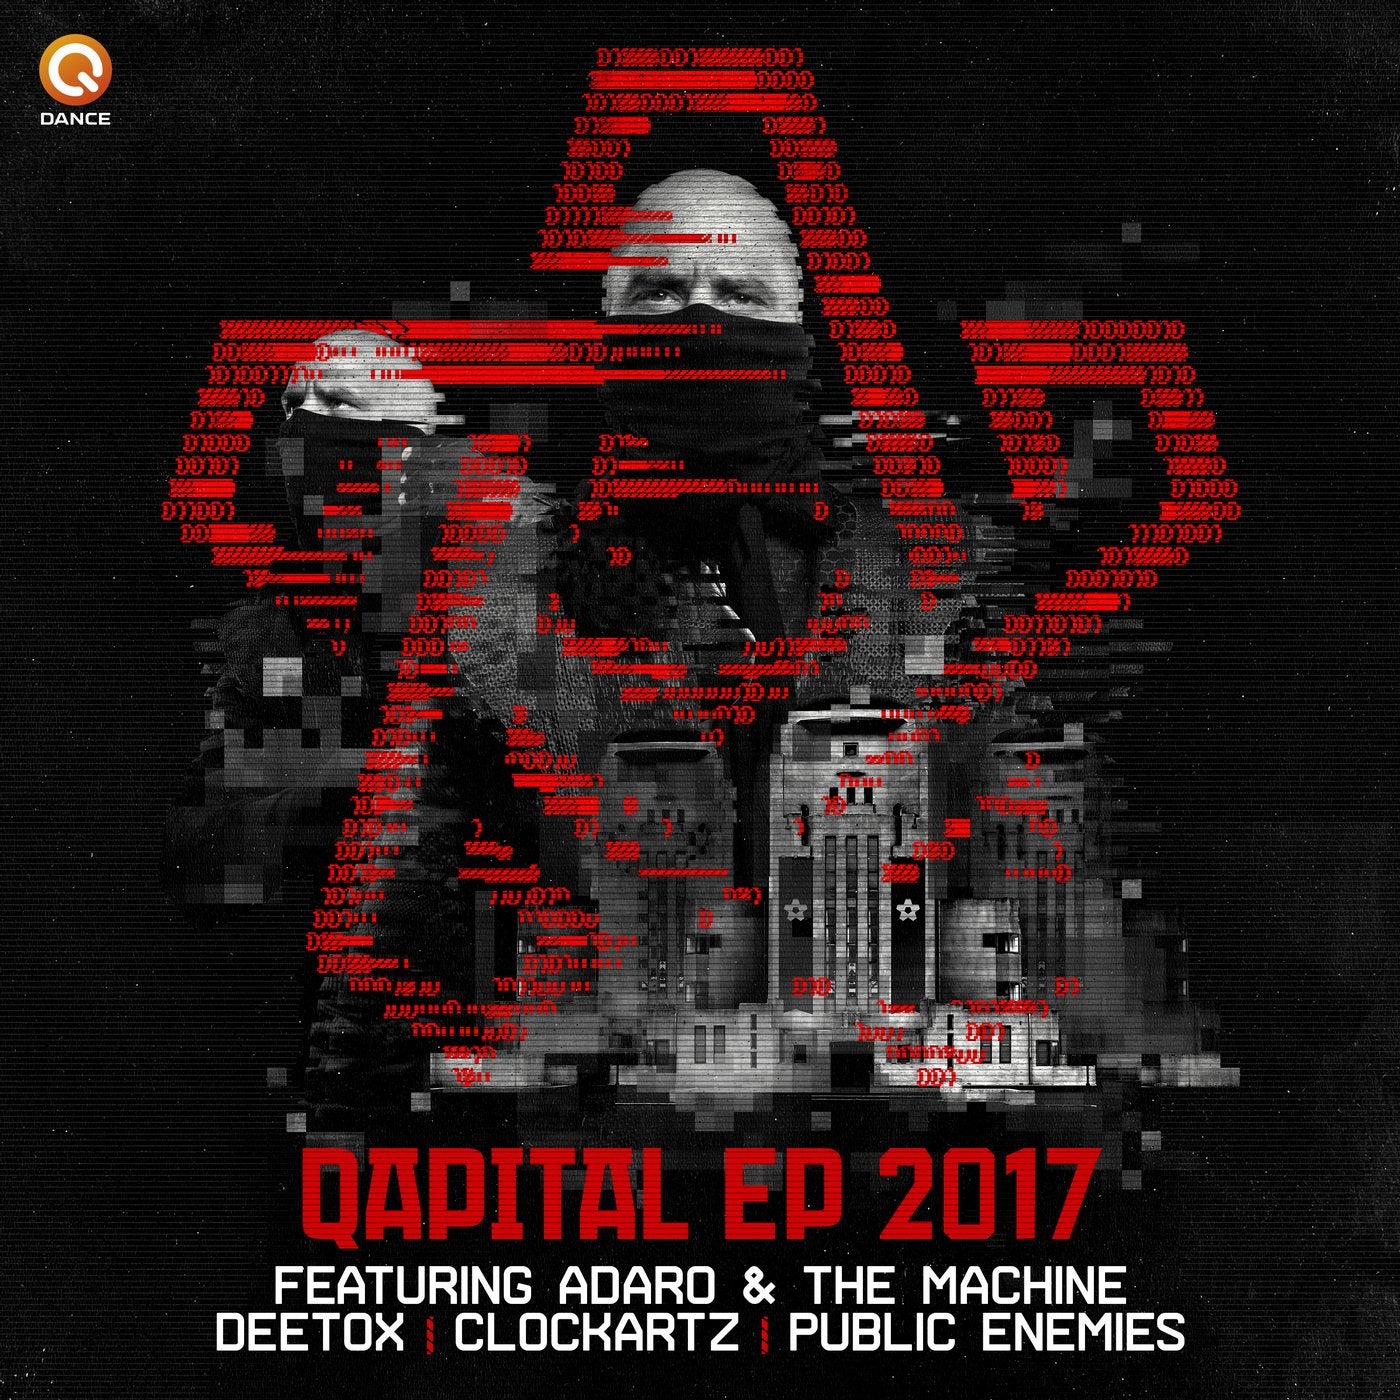 QAPITAL EP 2017